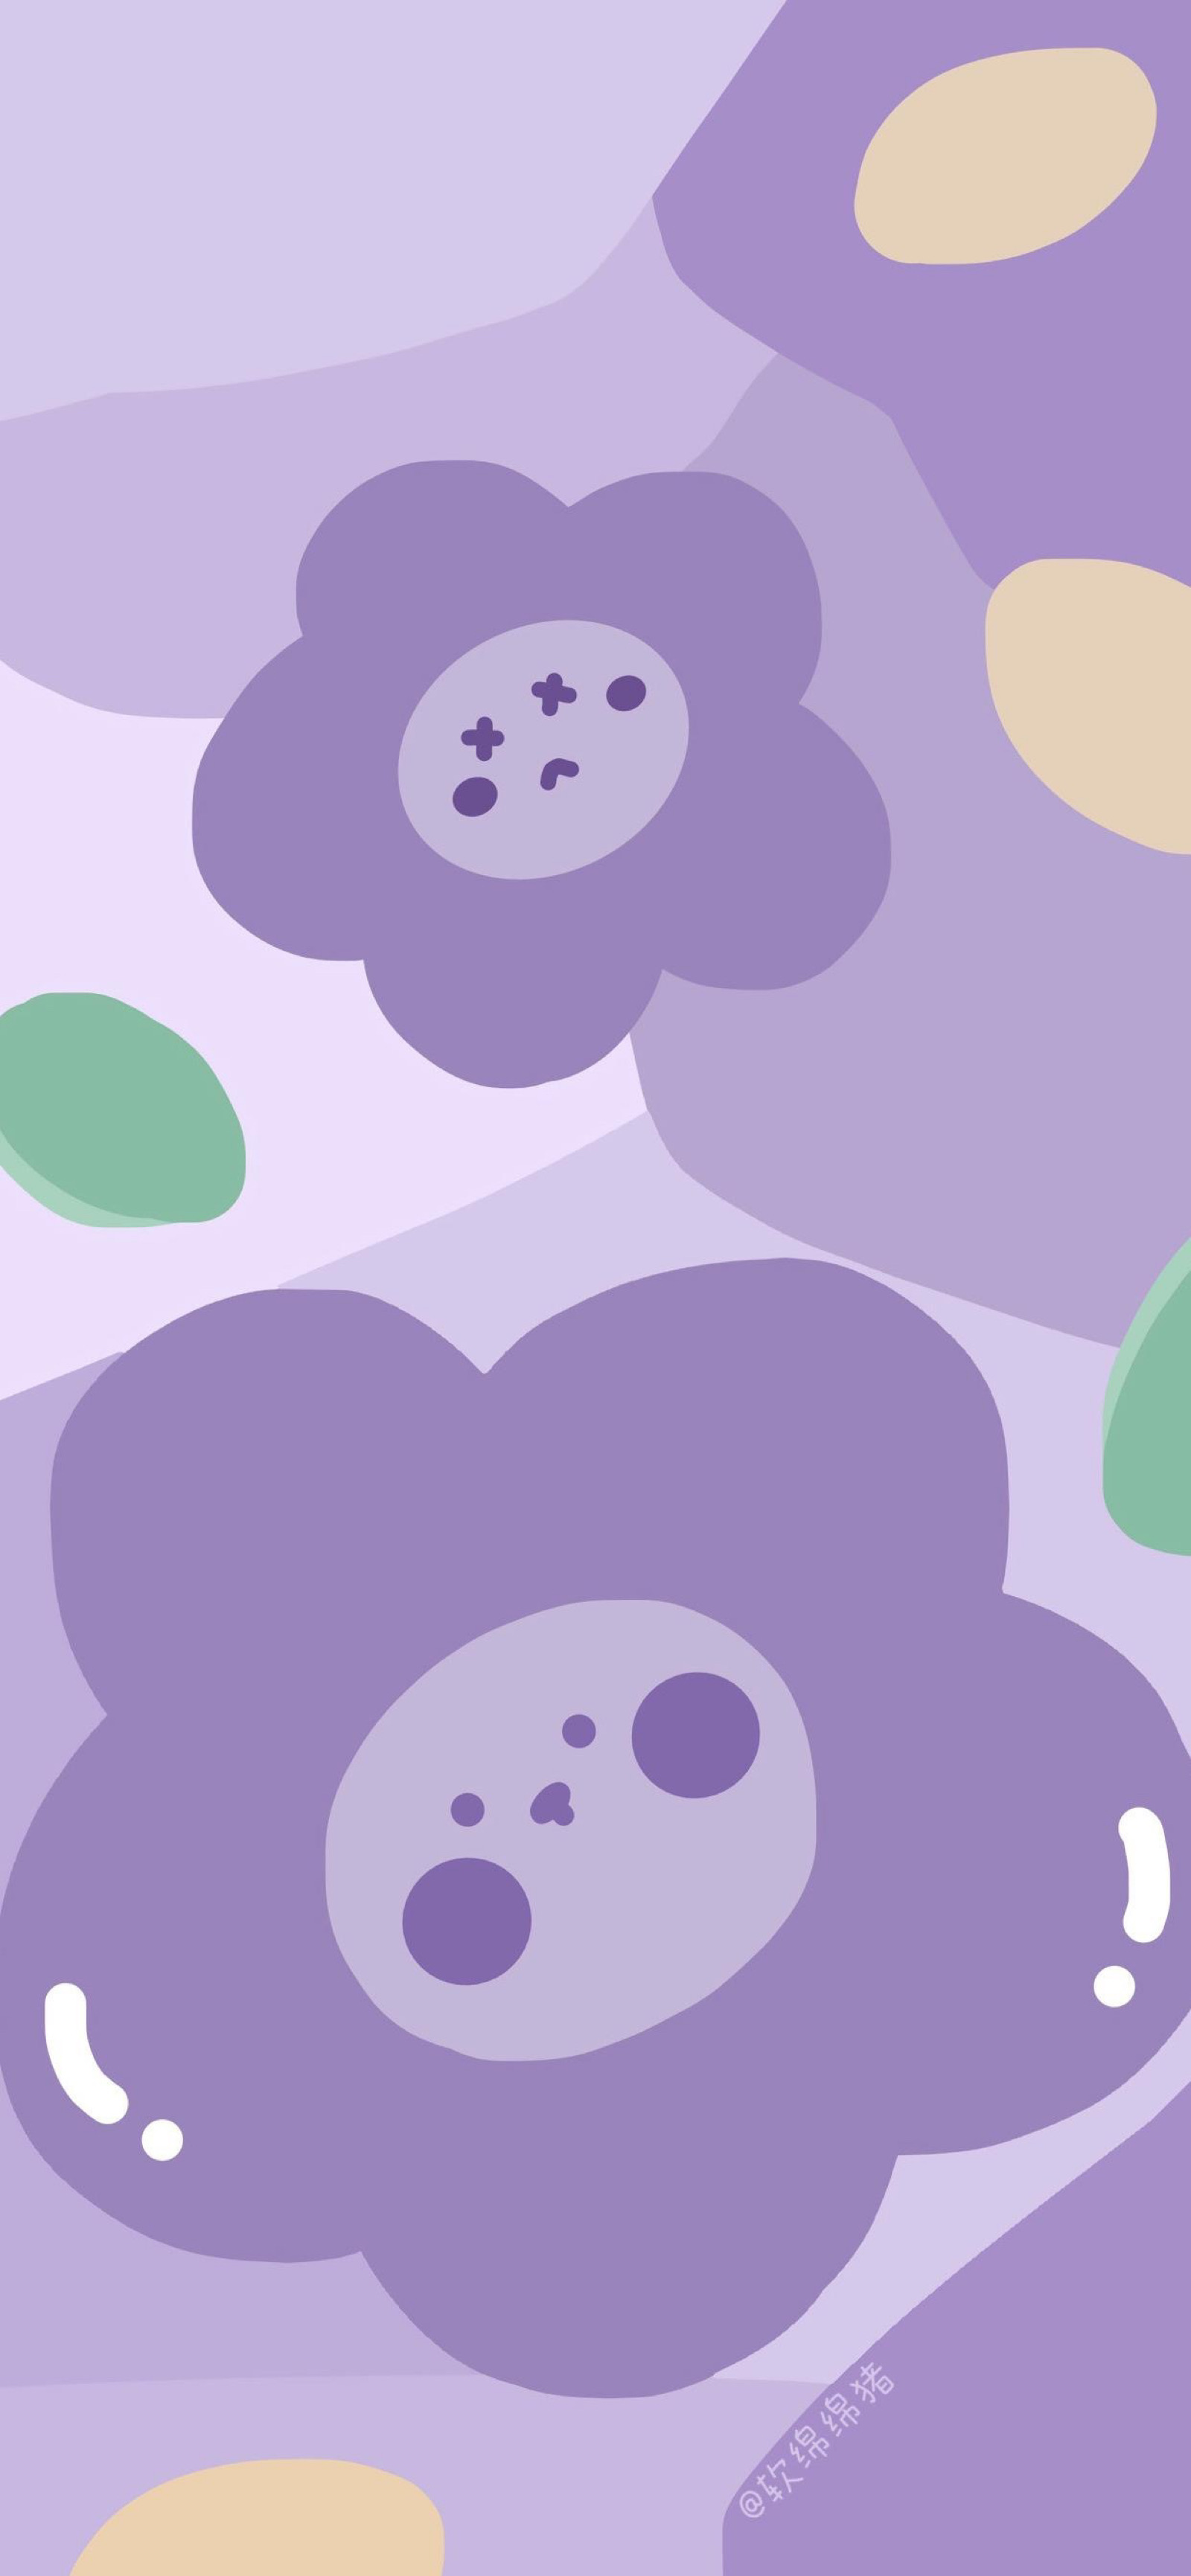 苹果12紫色手机壁纸图片